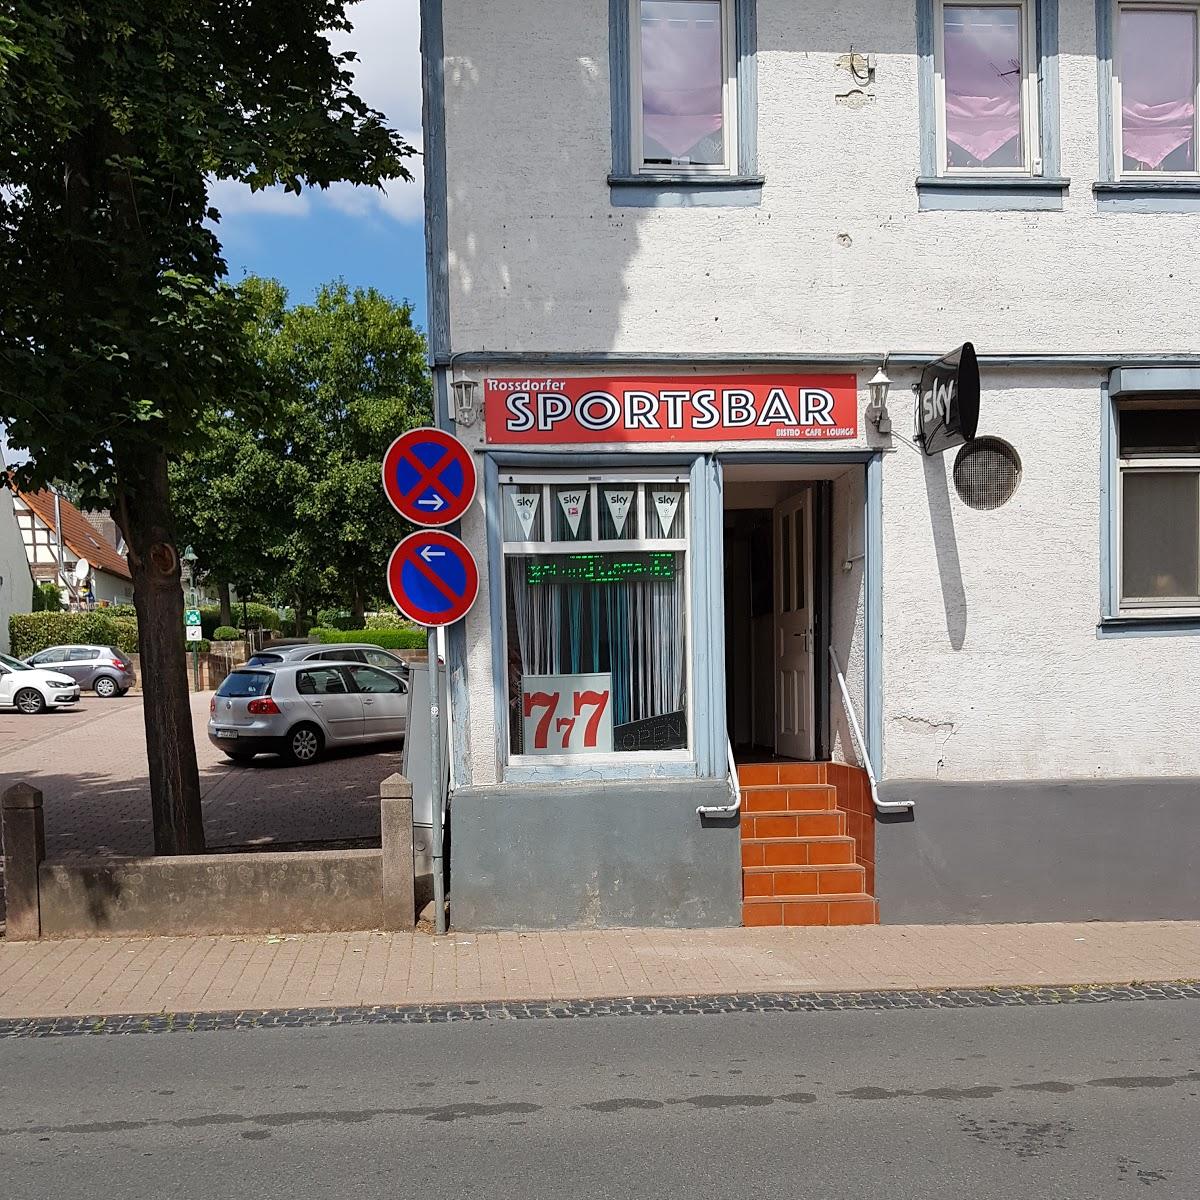 Restaurant "Sportsbar" in Roßdorf